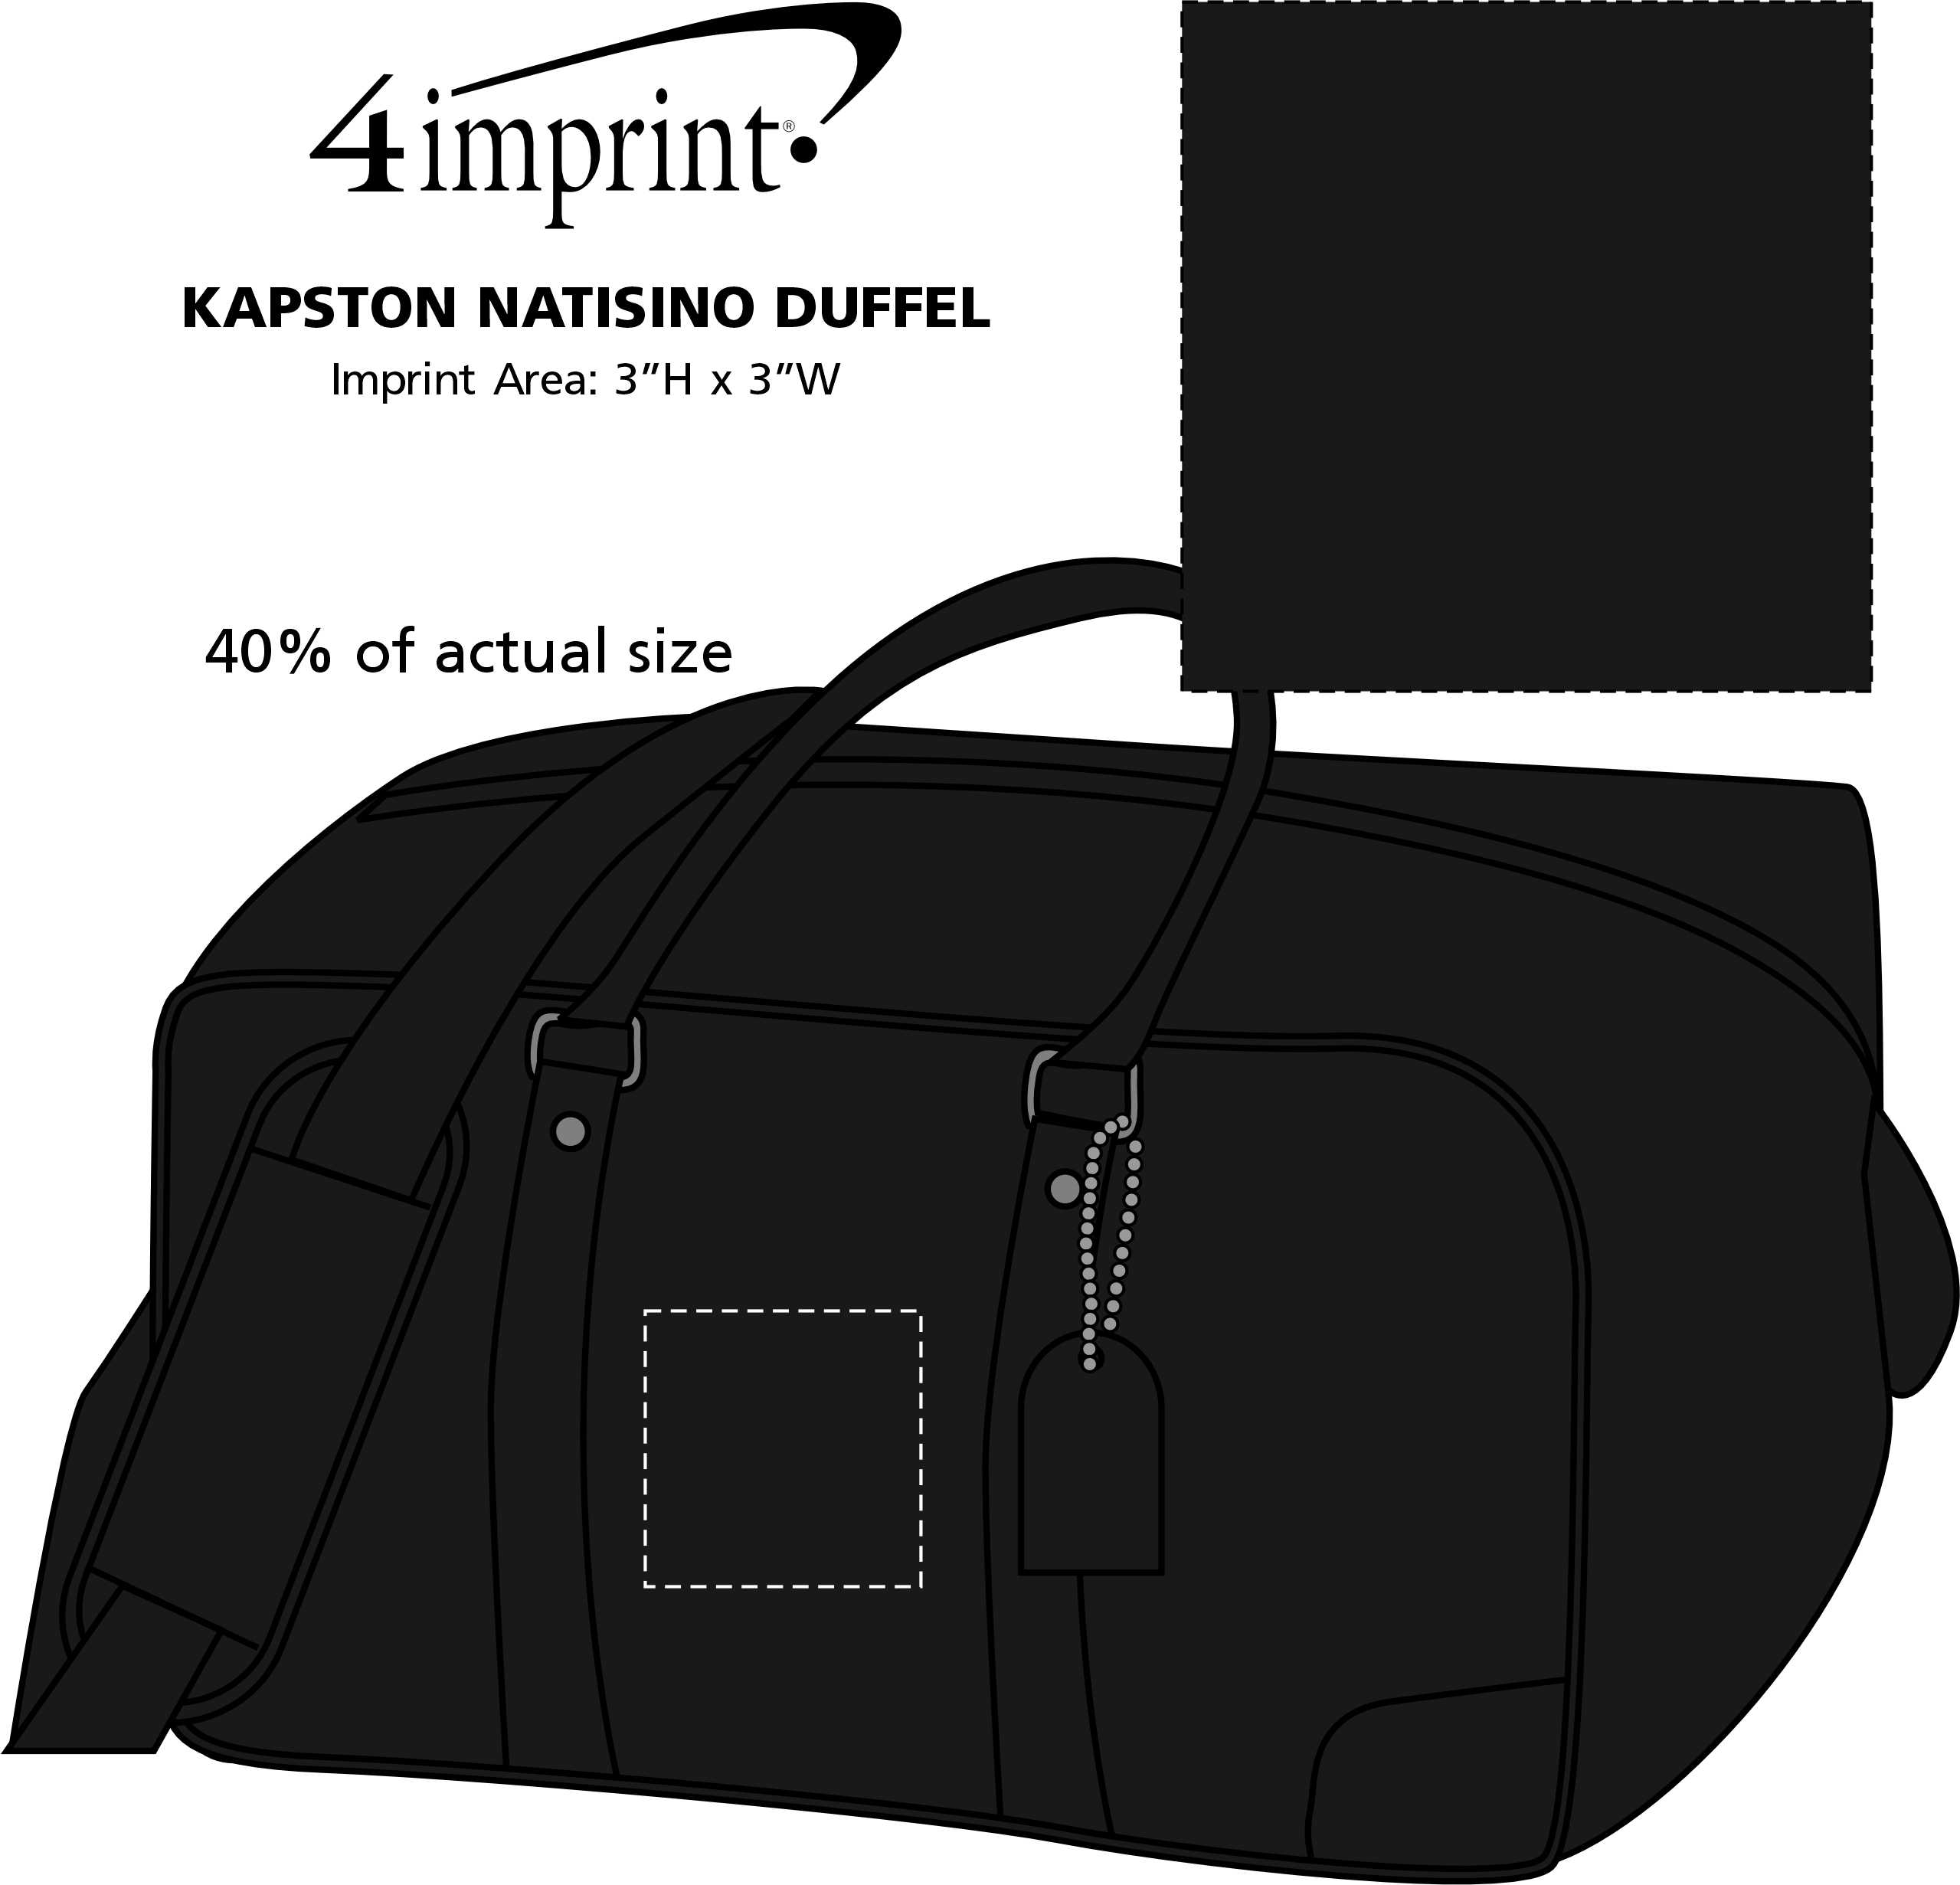 Imprint Area of Kapston Natisino Duffel